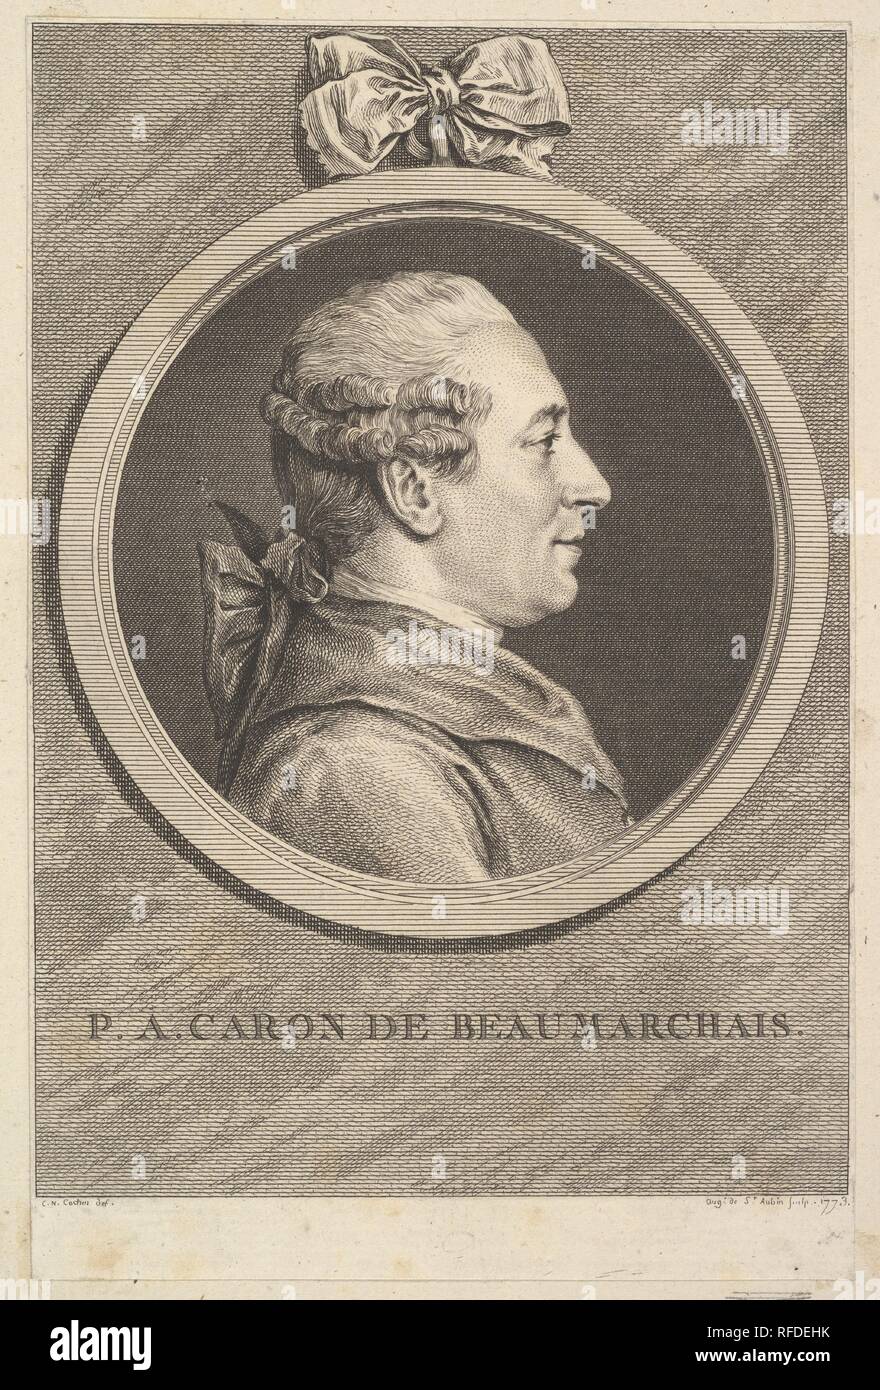 Portrait de P. A. Caron de Beaumarchais. Artiste : Après Charles Nicolas Cochin II (français, Paris 1715-1790 Paris) ; Augustin de Saint-Aubin (français, Paris 1736-1807 Paris). Dimensions : Support : 10 3/16 × 6 13/16 in. (25,8 × 17,3 cm) Feuille : 7 3/8 x 4 7/8 in. (18,7 × 12,4 cm). Date : 1773. Musée : Metropolitan Museum of Art, New York, USA. Banque D'Images